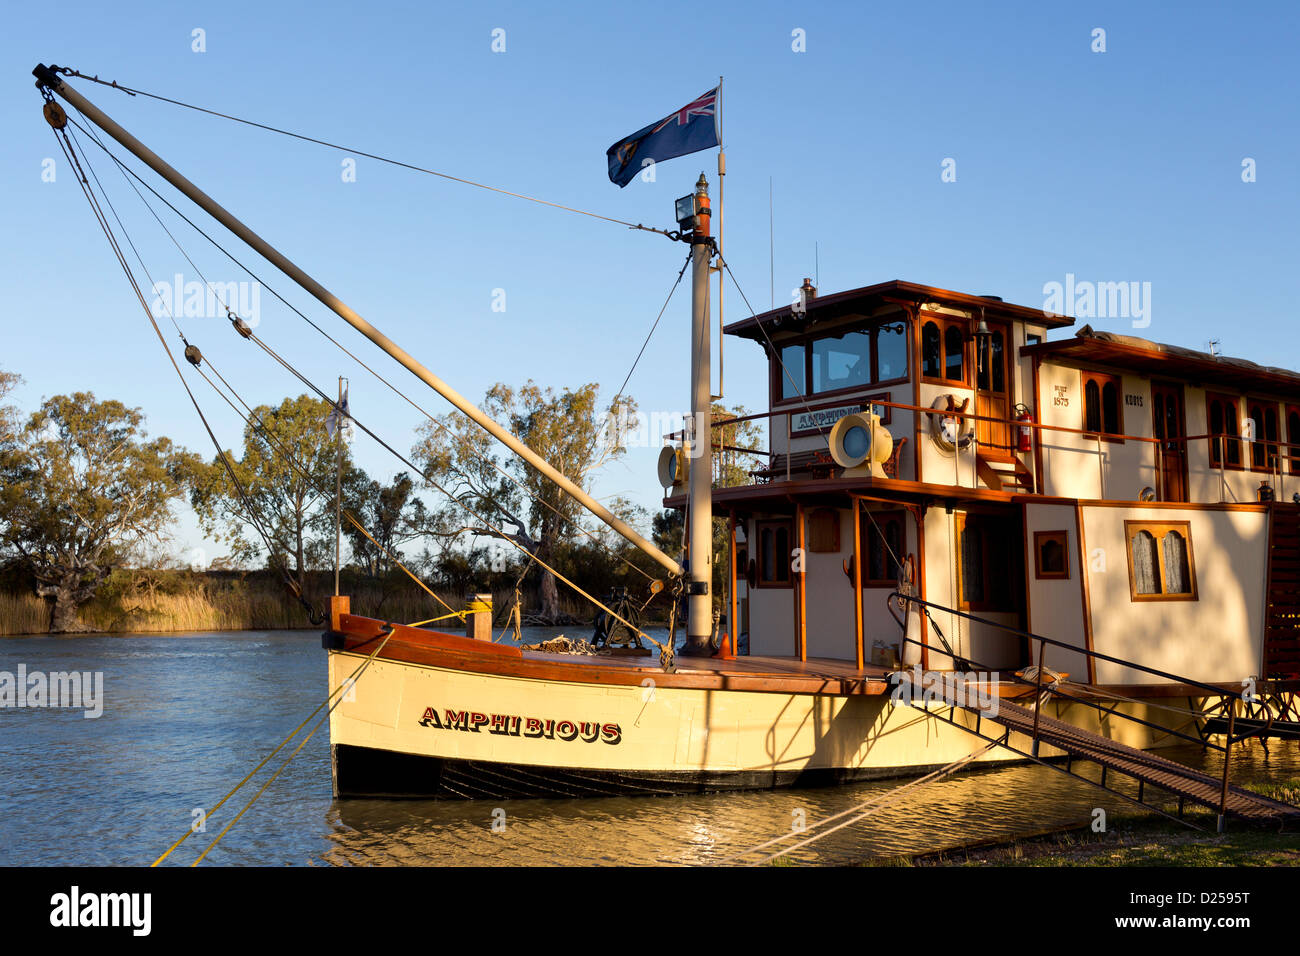 PB lato anfibio wheeler in barca a remi ormeggiate sul Darling River di Wentworth. Foto Stock